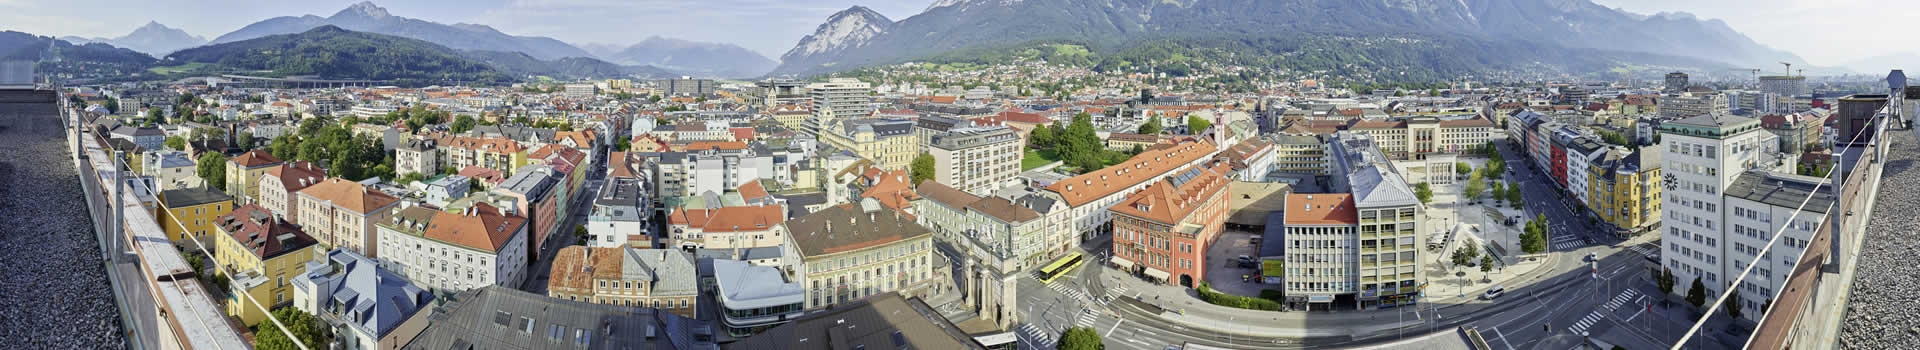 Hambourg - Innsbruck - kranebitten